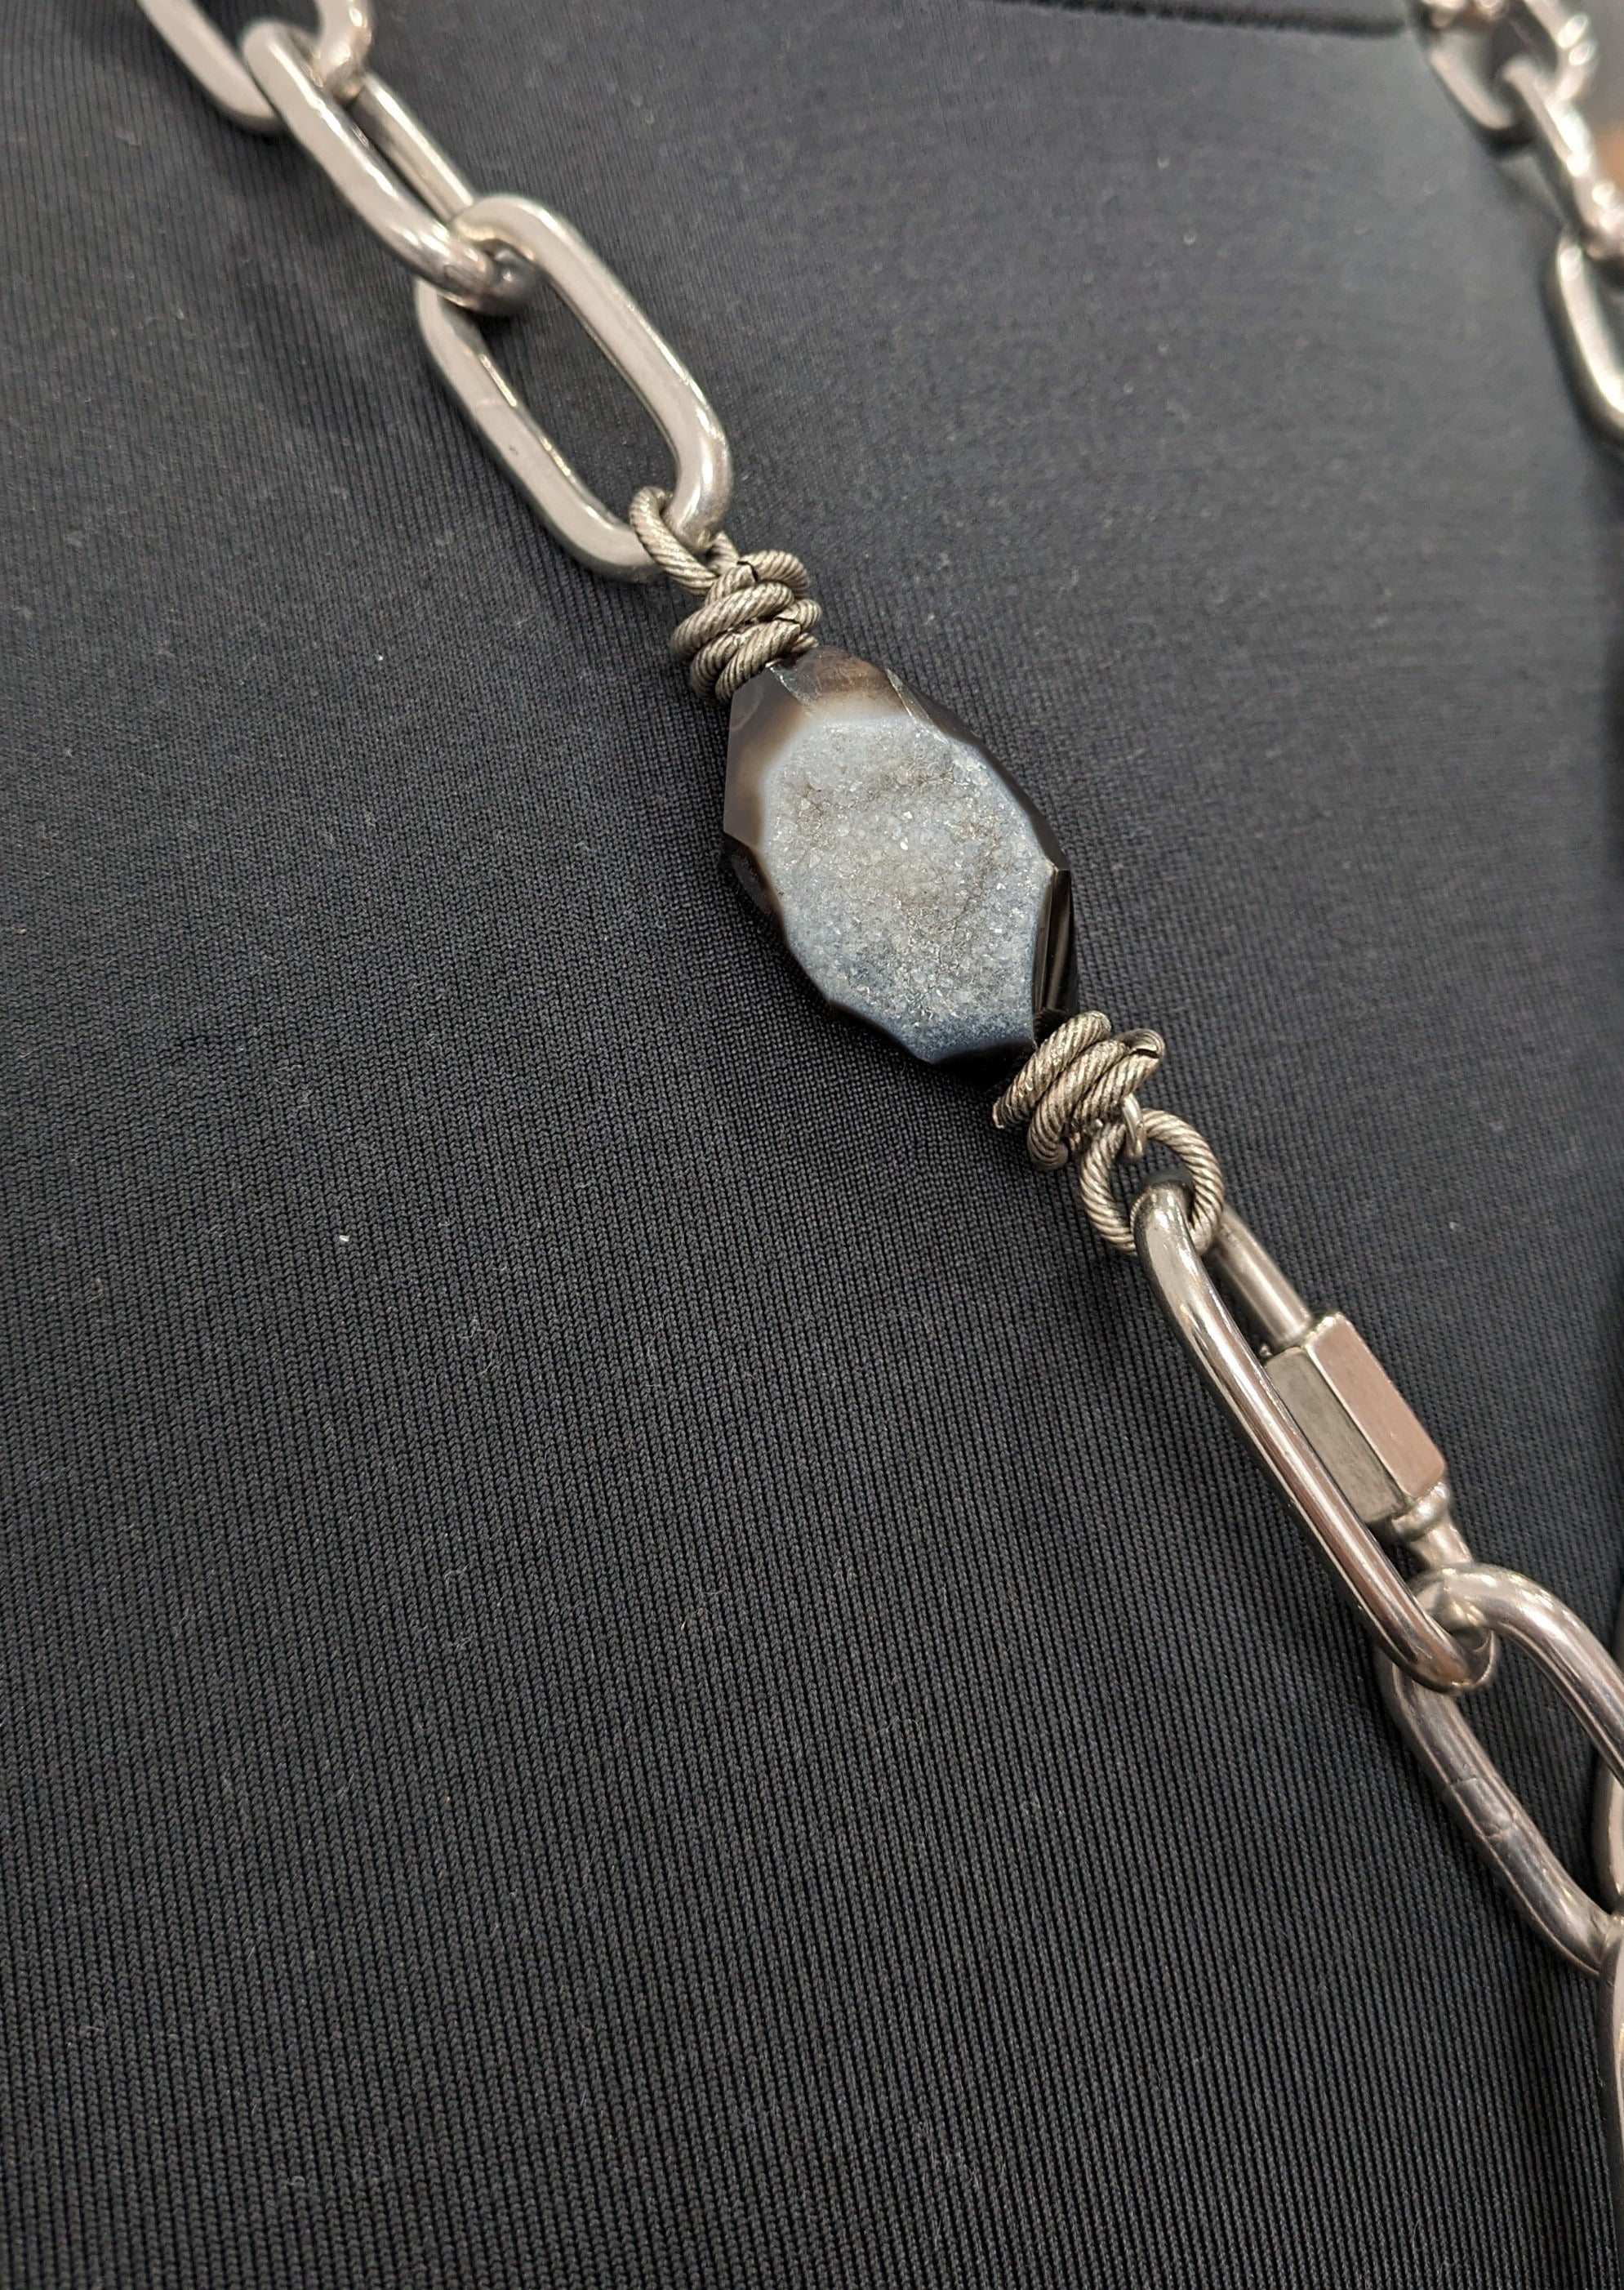 Mya Lambrecht Jewelry - Necklace